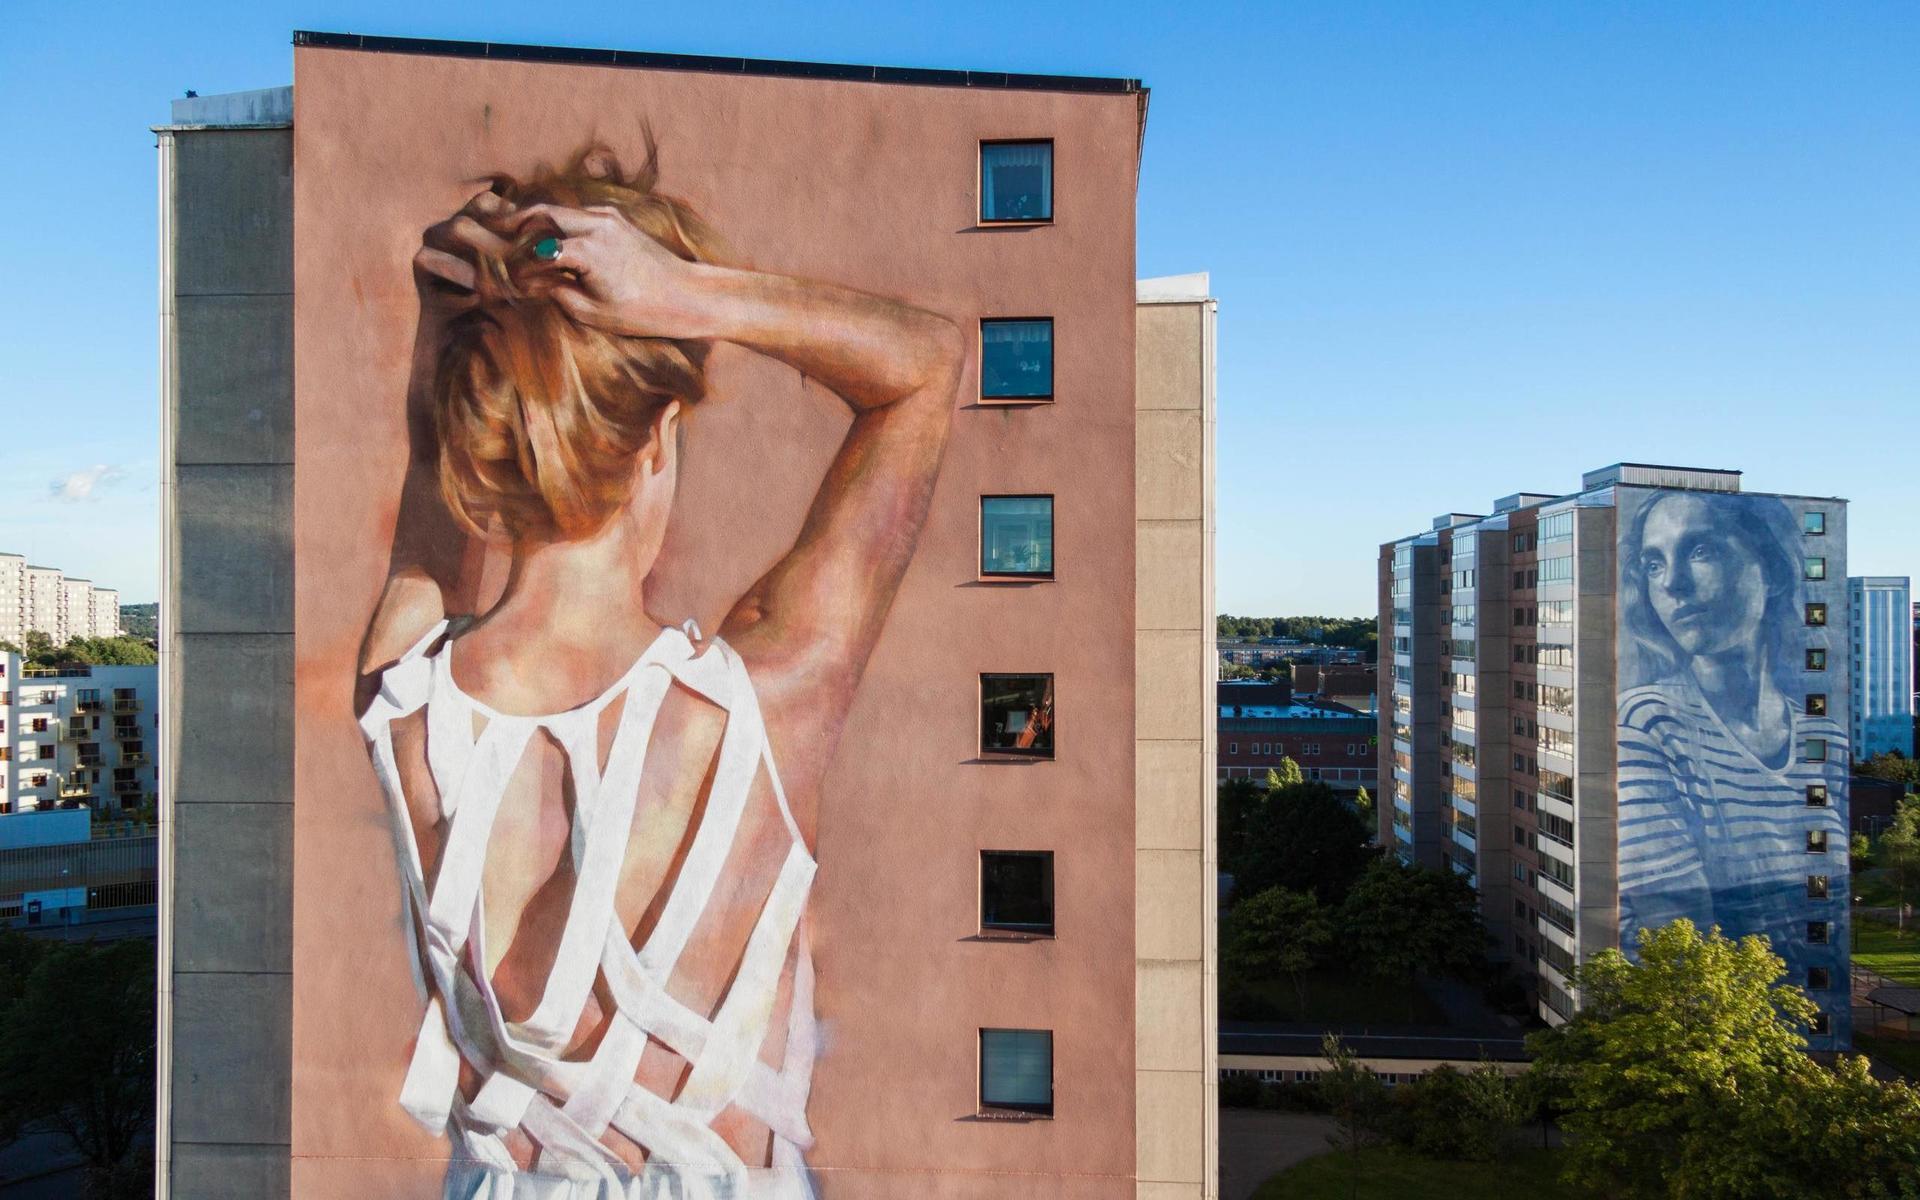 Vi ser konstnären Jarus från Kanadas jättemålning i Frölunda. I bakgrunden syns ett verk av Rone från Australien.